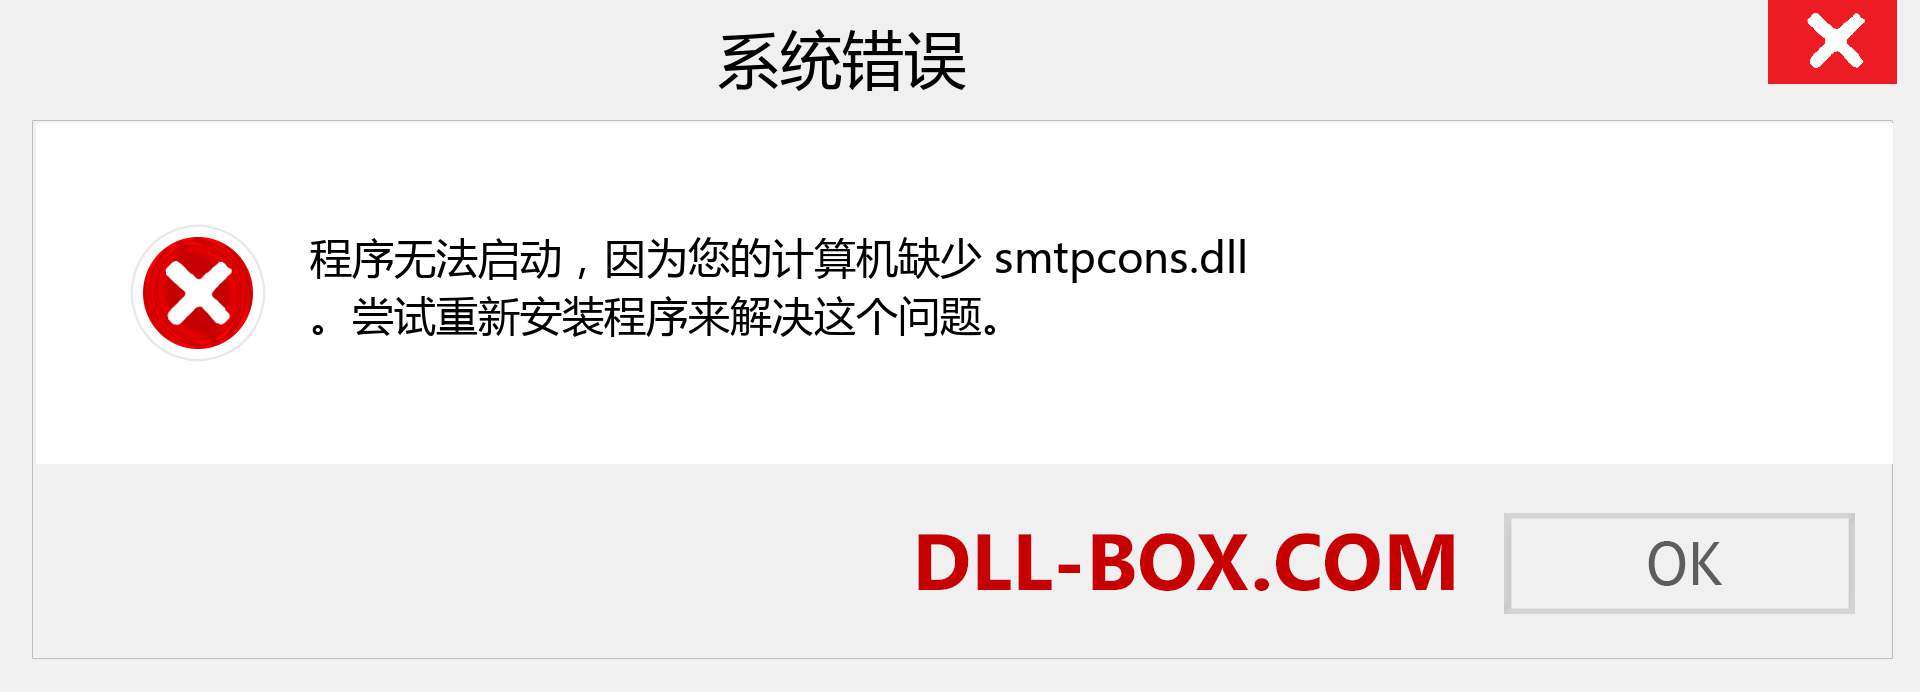 smtpcons.dll 文件丢失？。 适用于 Windows 7、8、10 的下载 - 修复 Windows、照片、图像上的 smtpcons dll 丢失错误